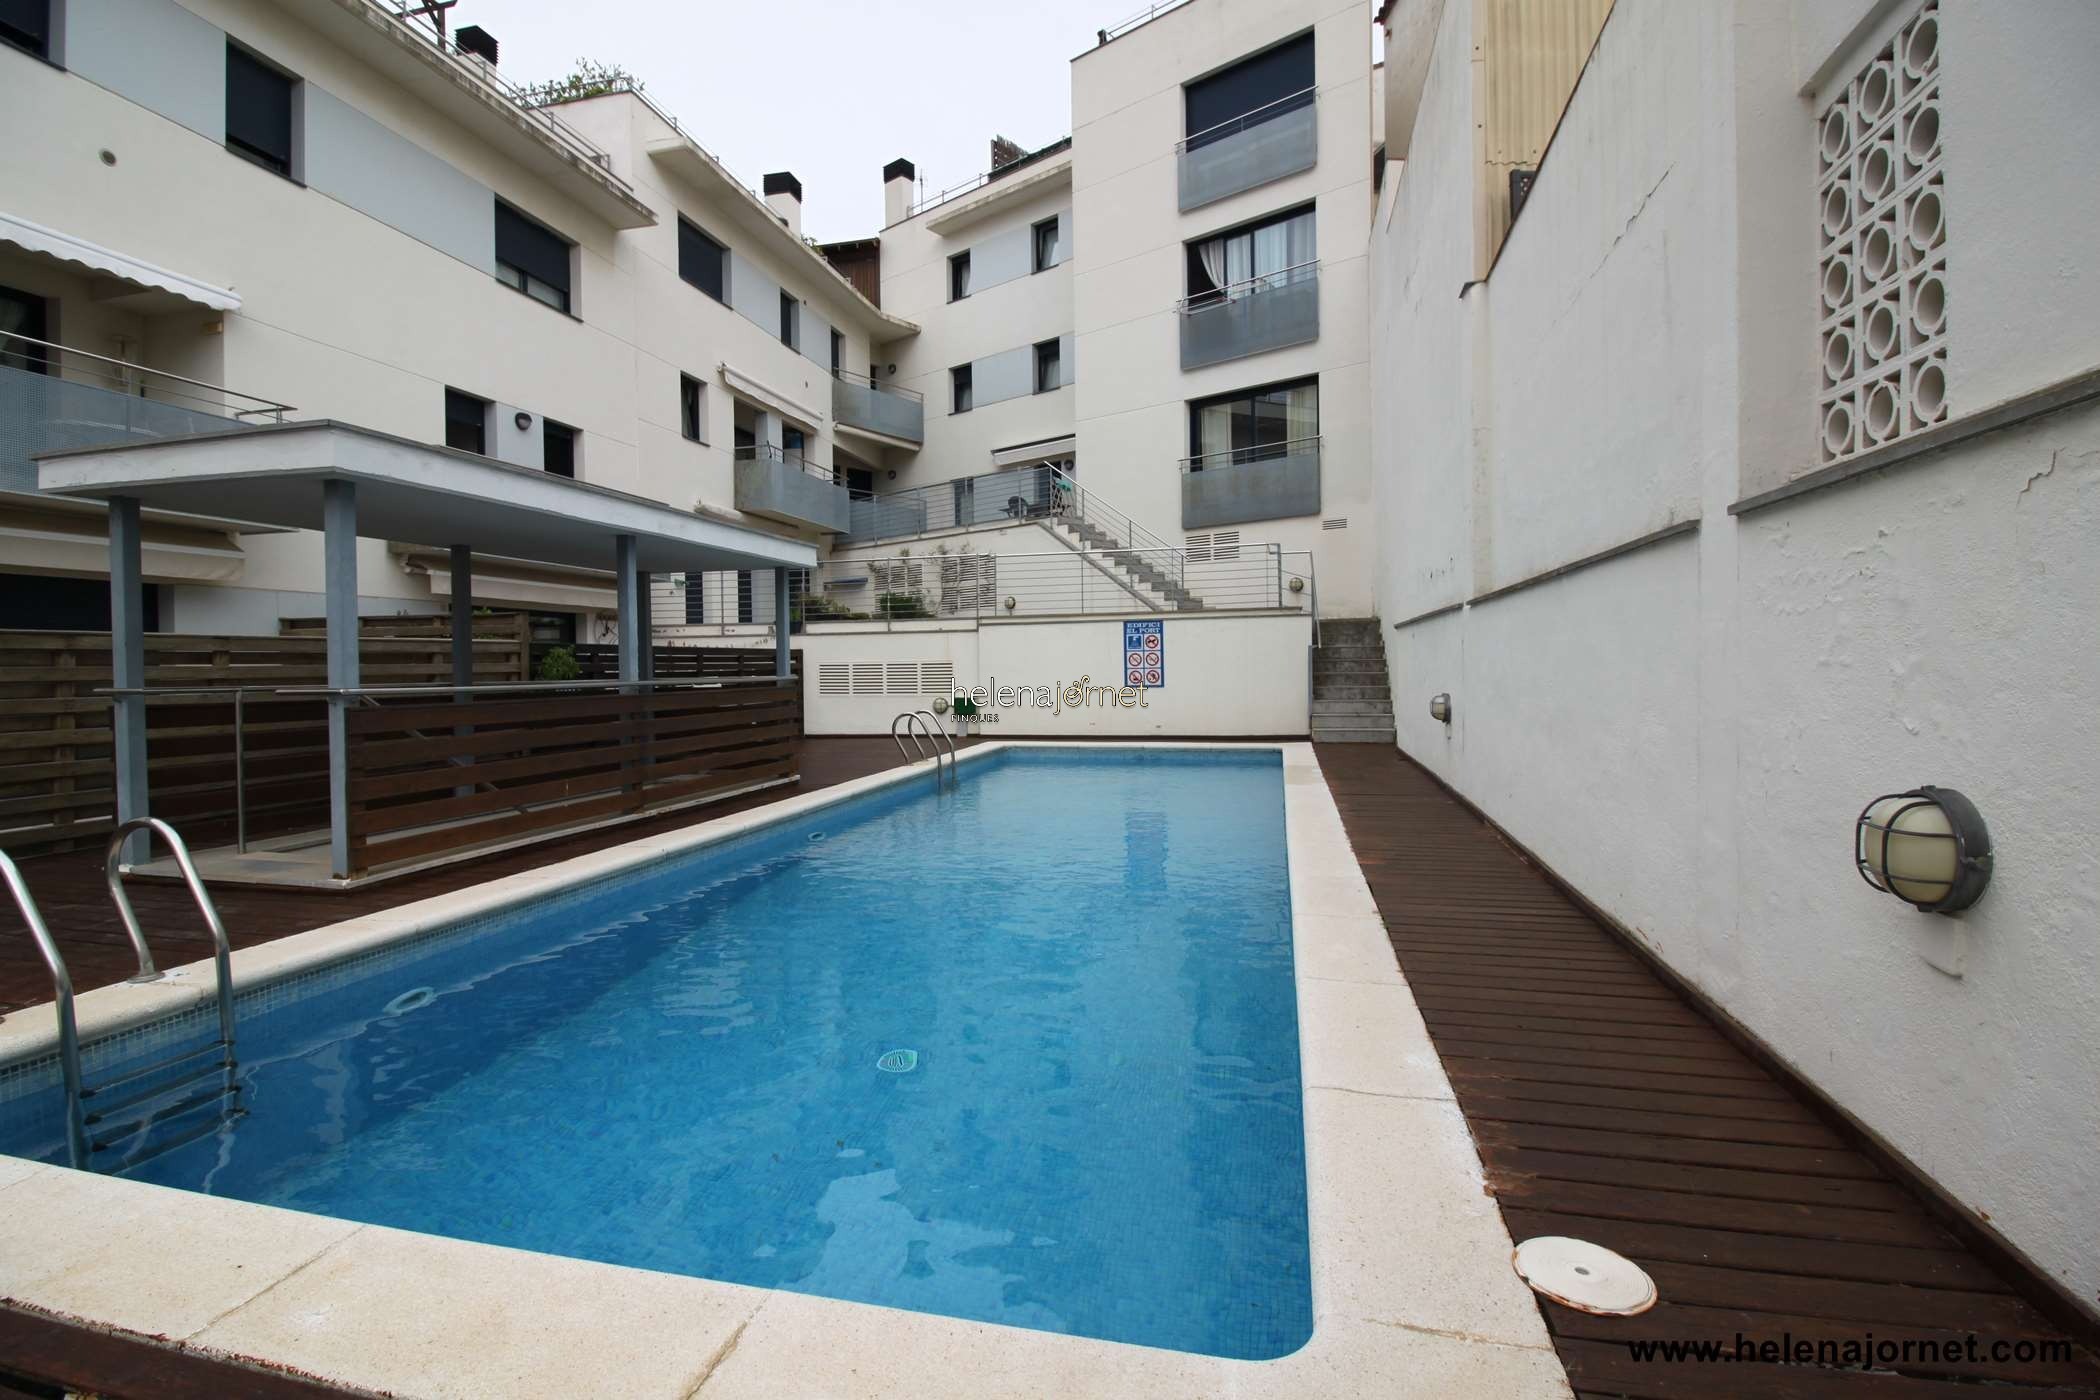 Apartamento con terraza y piscina comunitaria a 5 minutos de la playa - 70110 - Sant Feliu